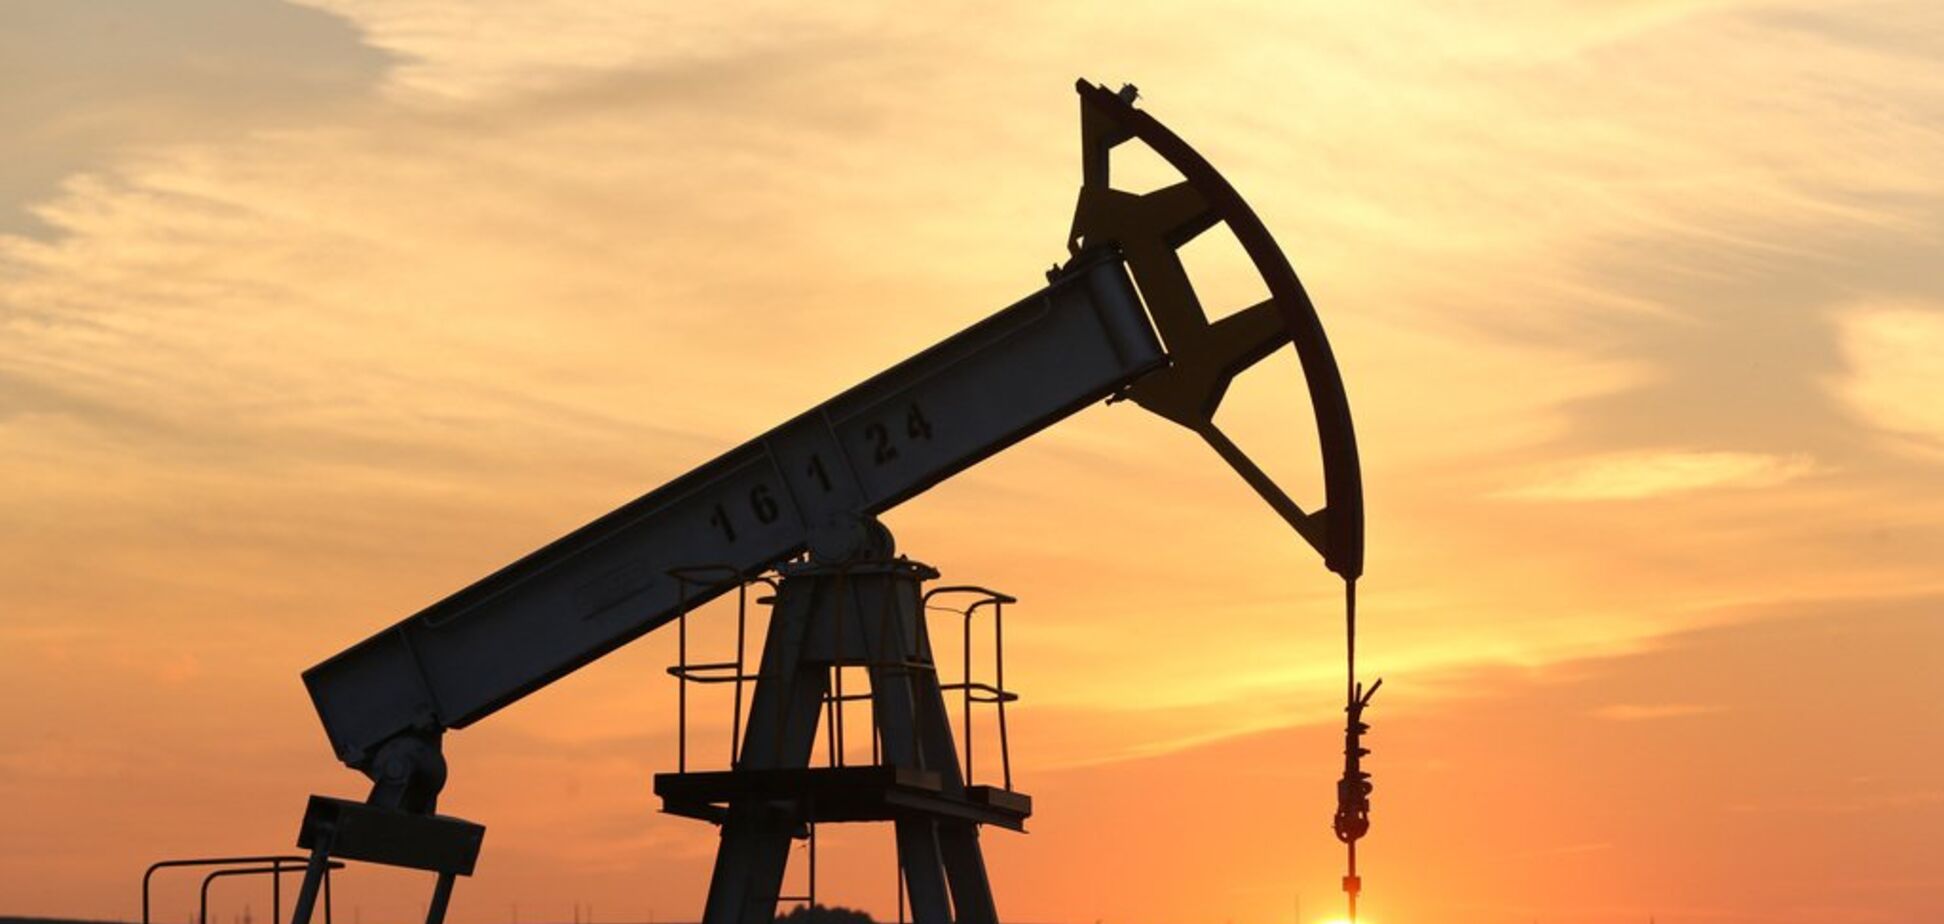 Больше не верят: в России потеряли надежду на высокие цены на нефть